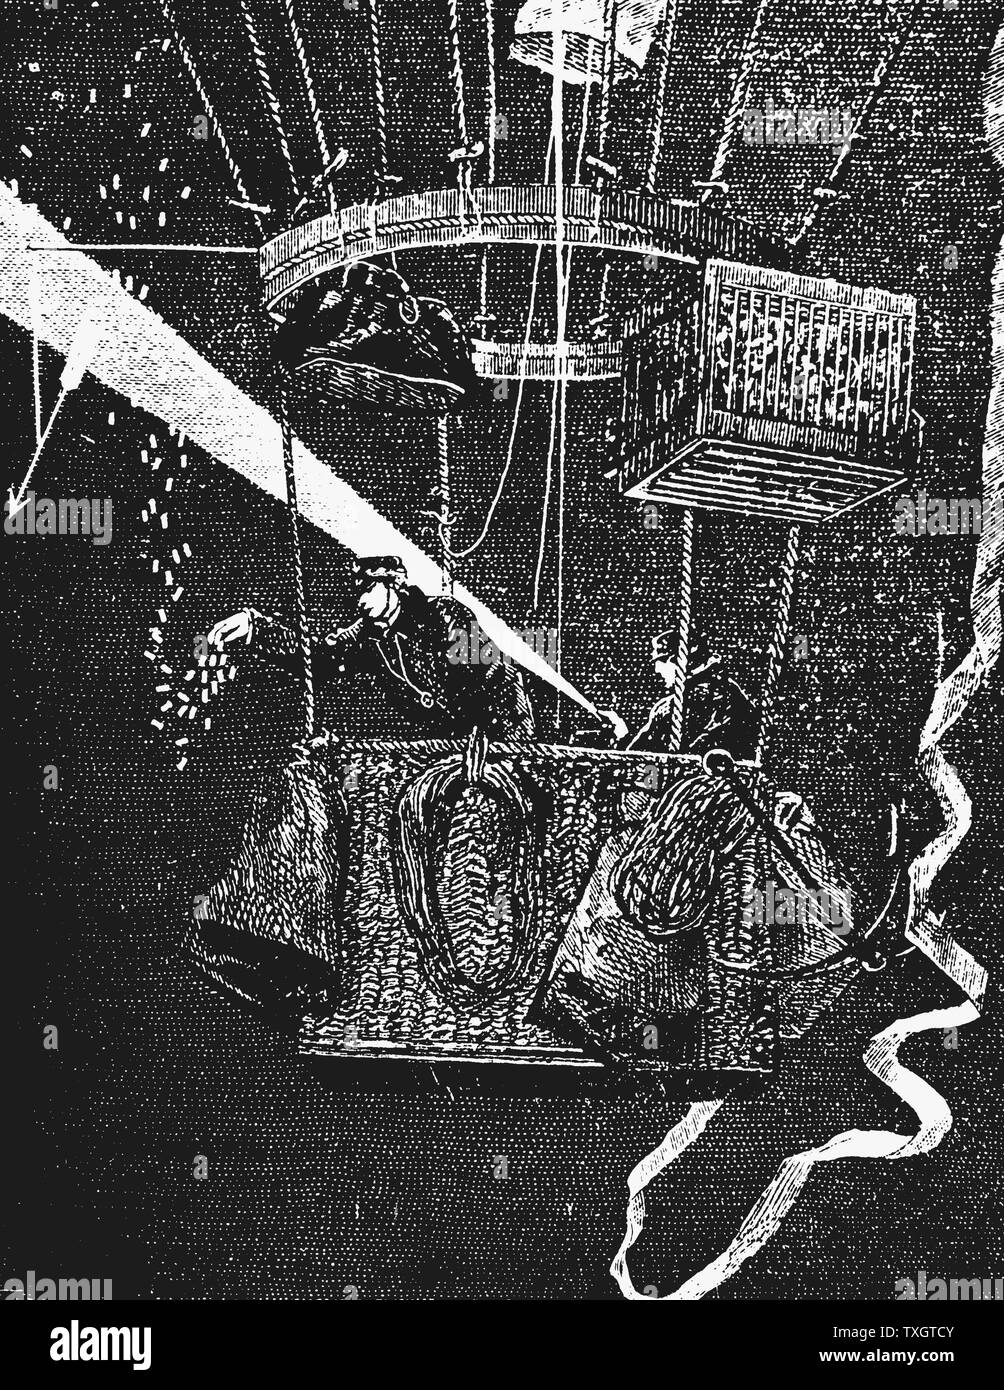 Ballon "Ville d'Orleans' nach dem Verlassen des Gare du Nord in der Nacht vom 24. November 1870, während der Belagerung von Paris im Deutsch-Französischen Krieg. Käfig oben rechts im Bild enthält Brieftauben, die verwendet würden, um Nachrichten zurück zu belagerten Stadt 1903 Paris Abbildung zu tragen Stockfoto